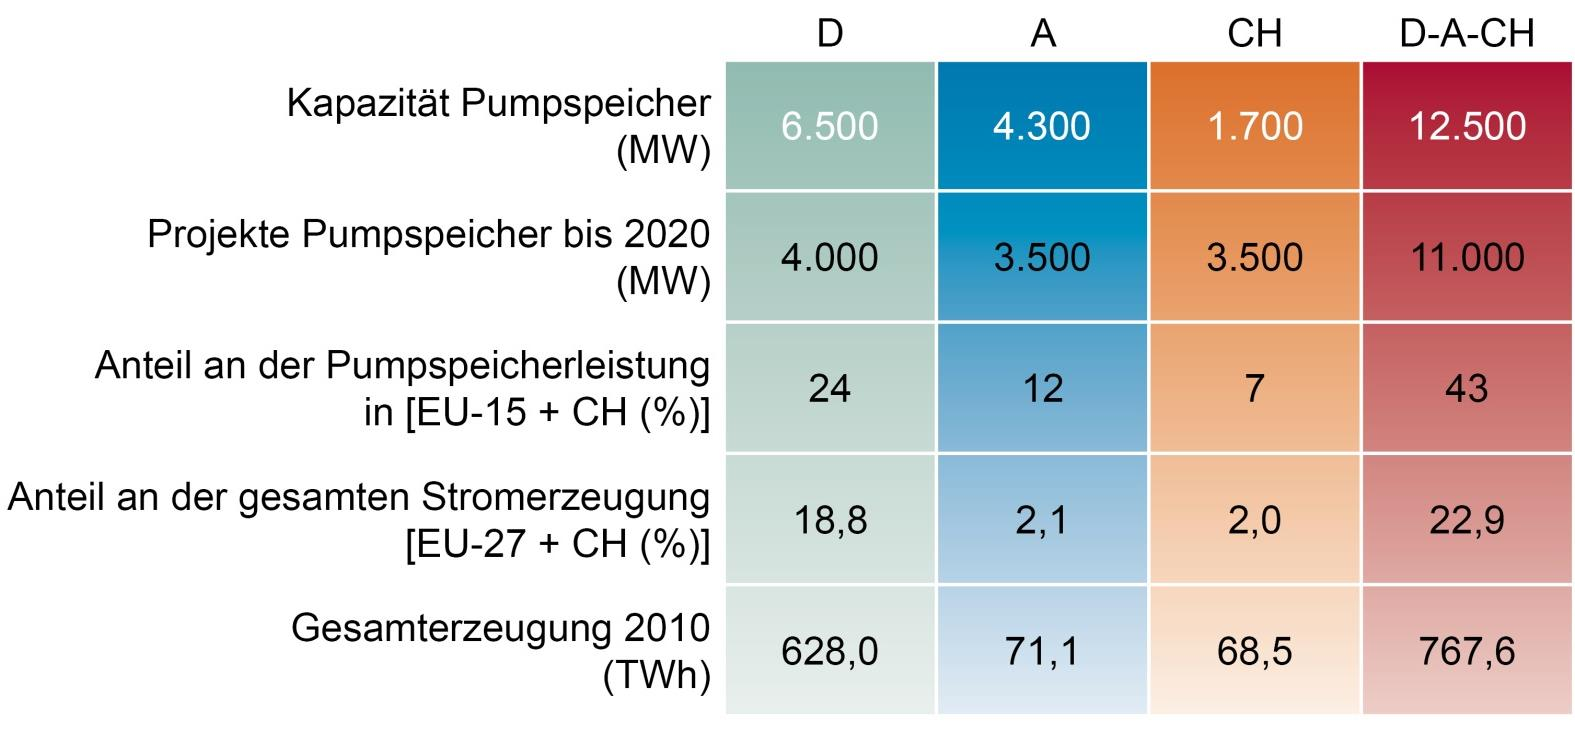 Kapazitätszuwachs Pumpspeicherkraftwerksprojekte in Österreich bzw.